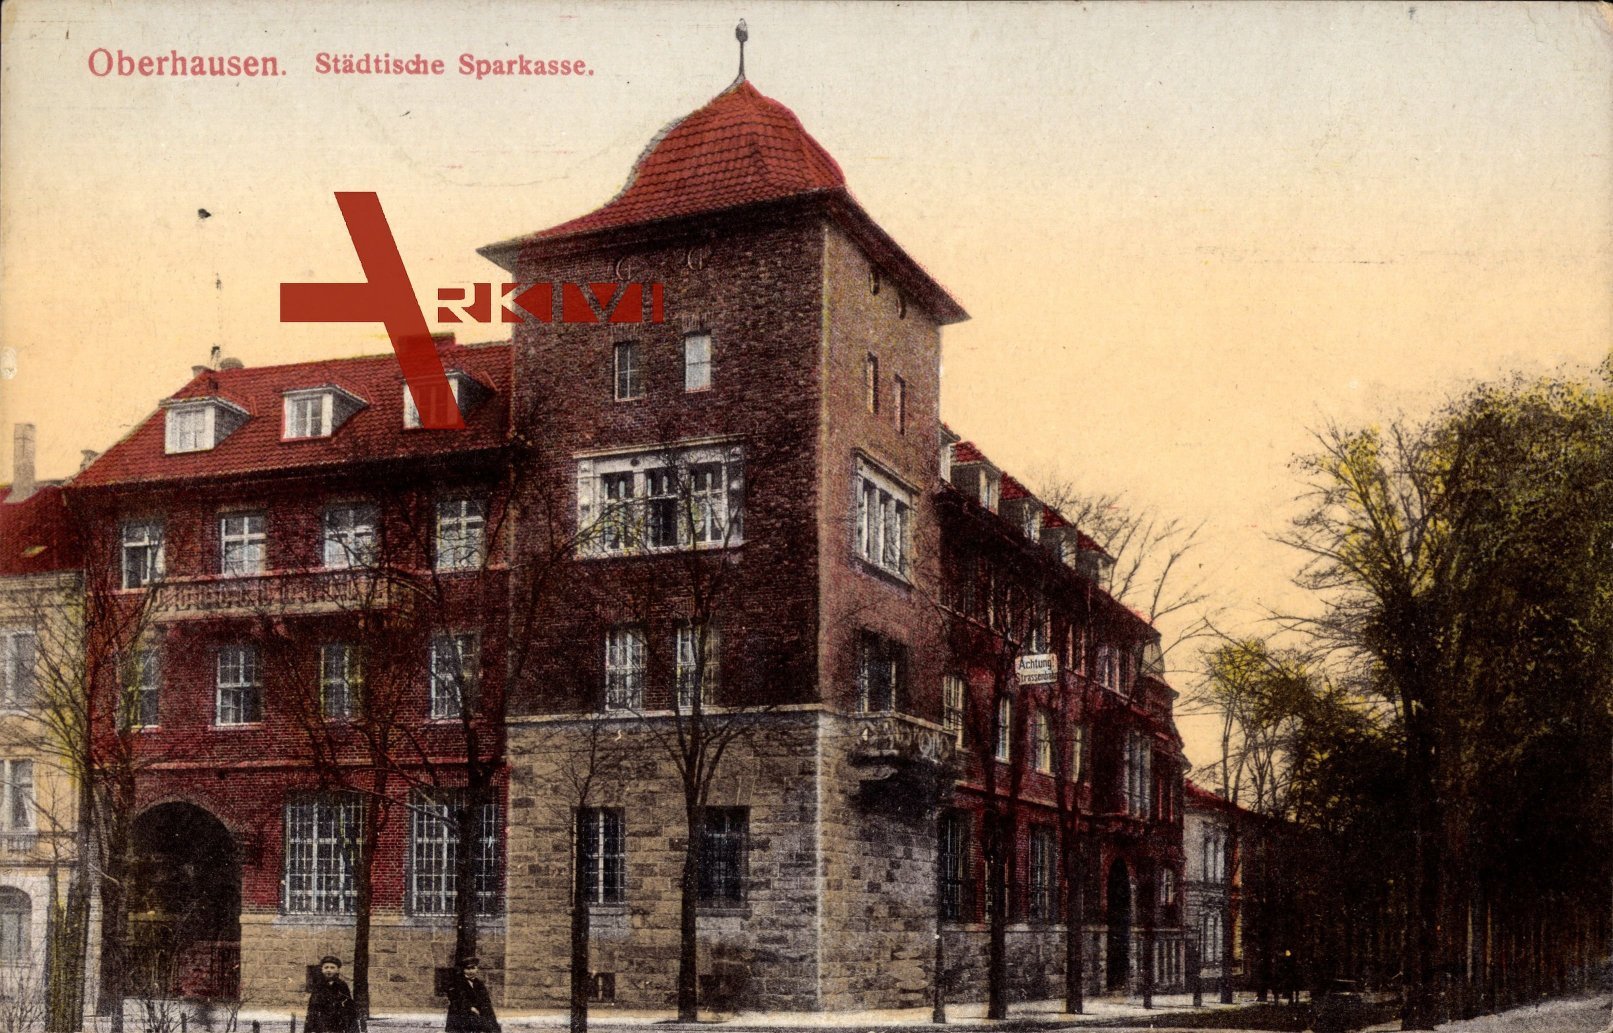 Oberhausen, Blick auf das Eckgebäude, Städtische Sparkasse, Achtung Schild